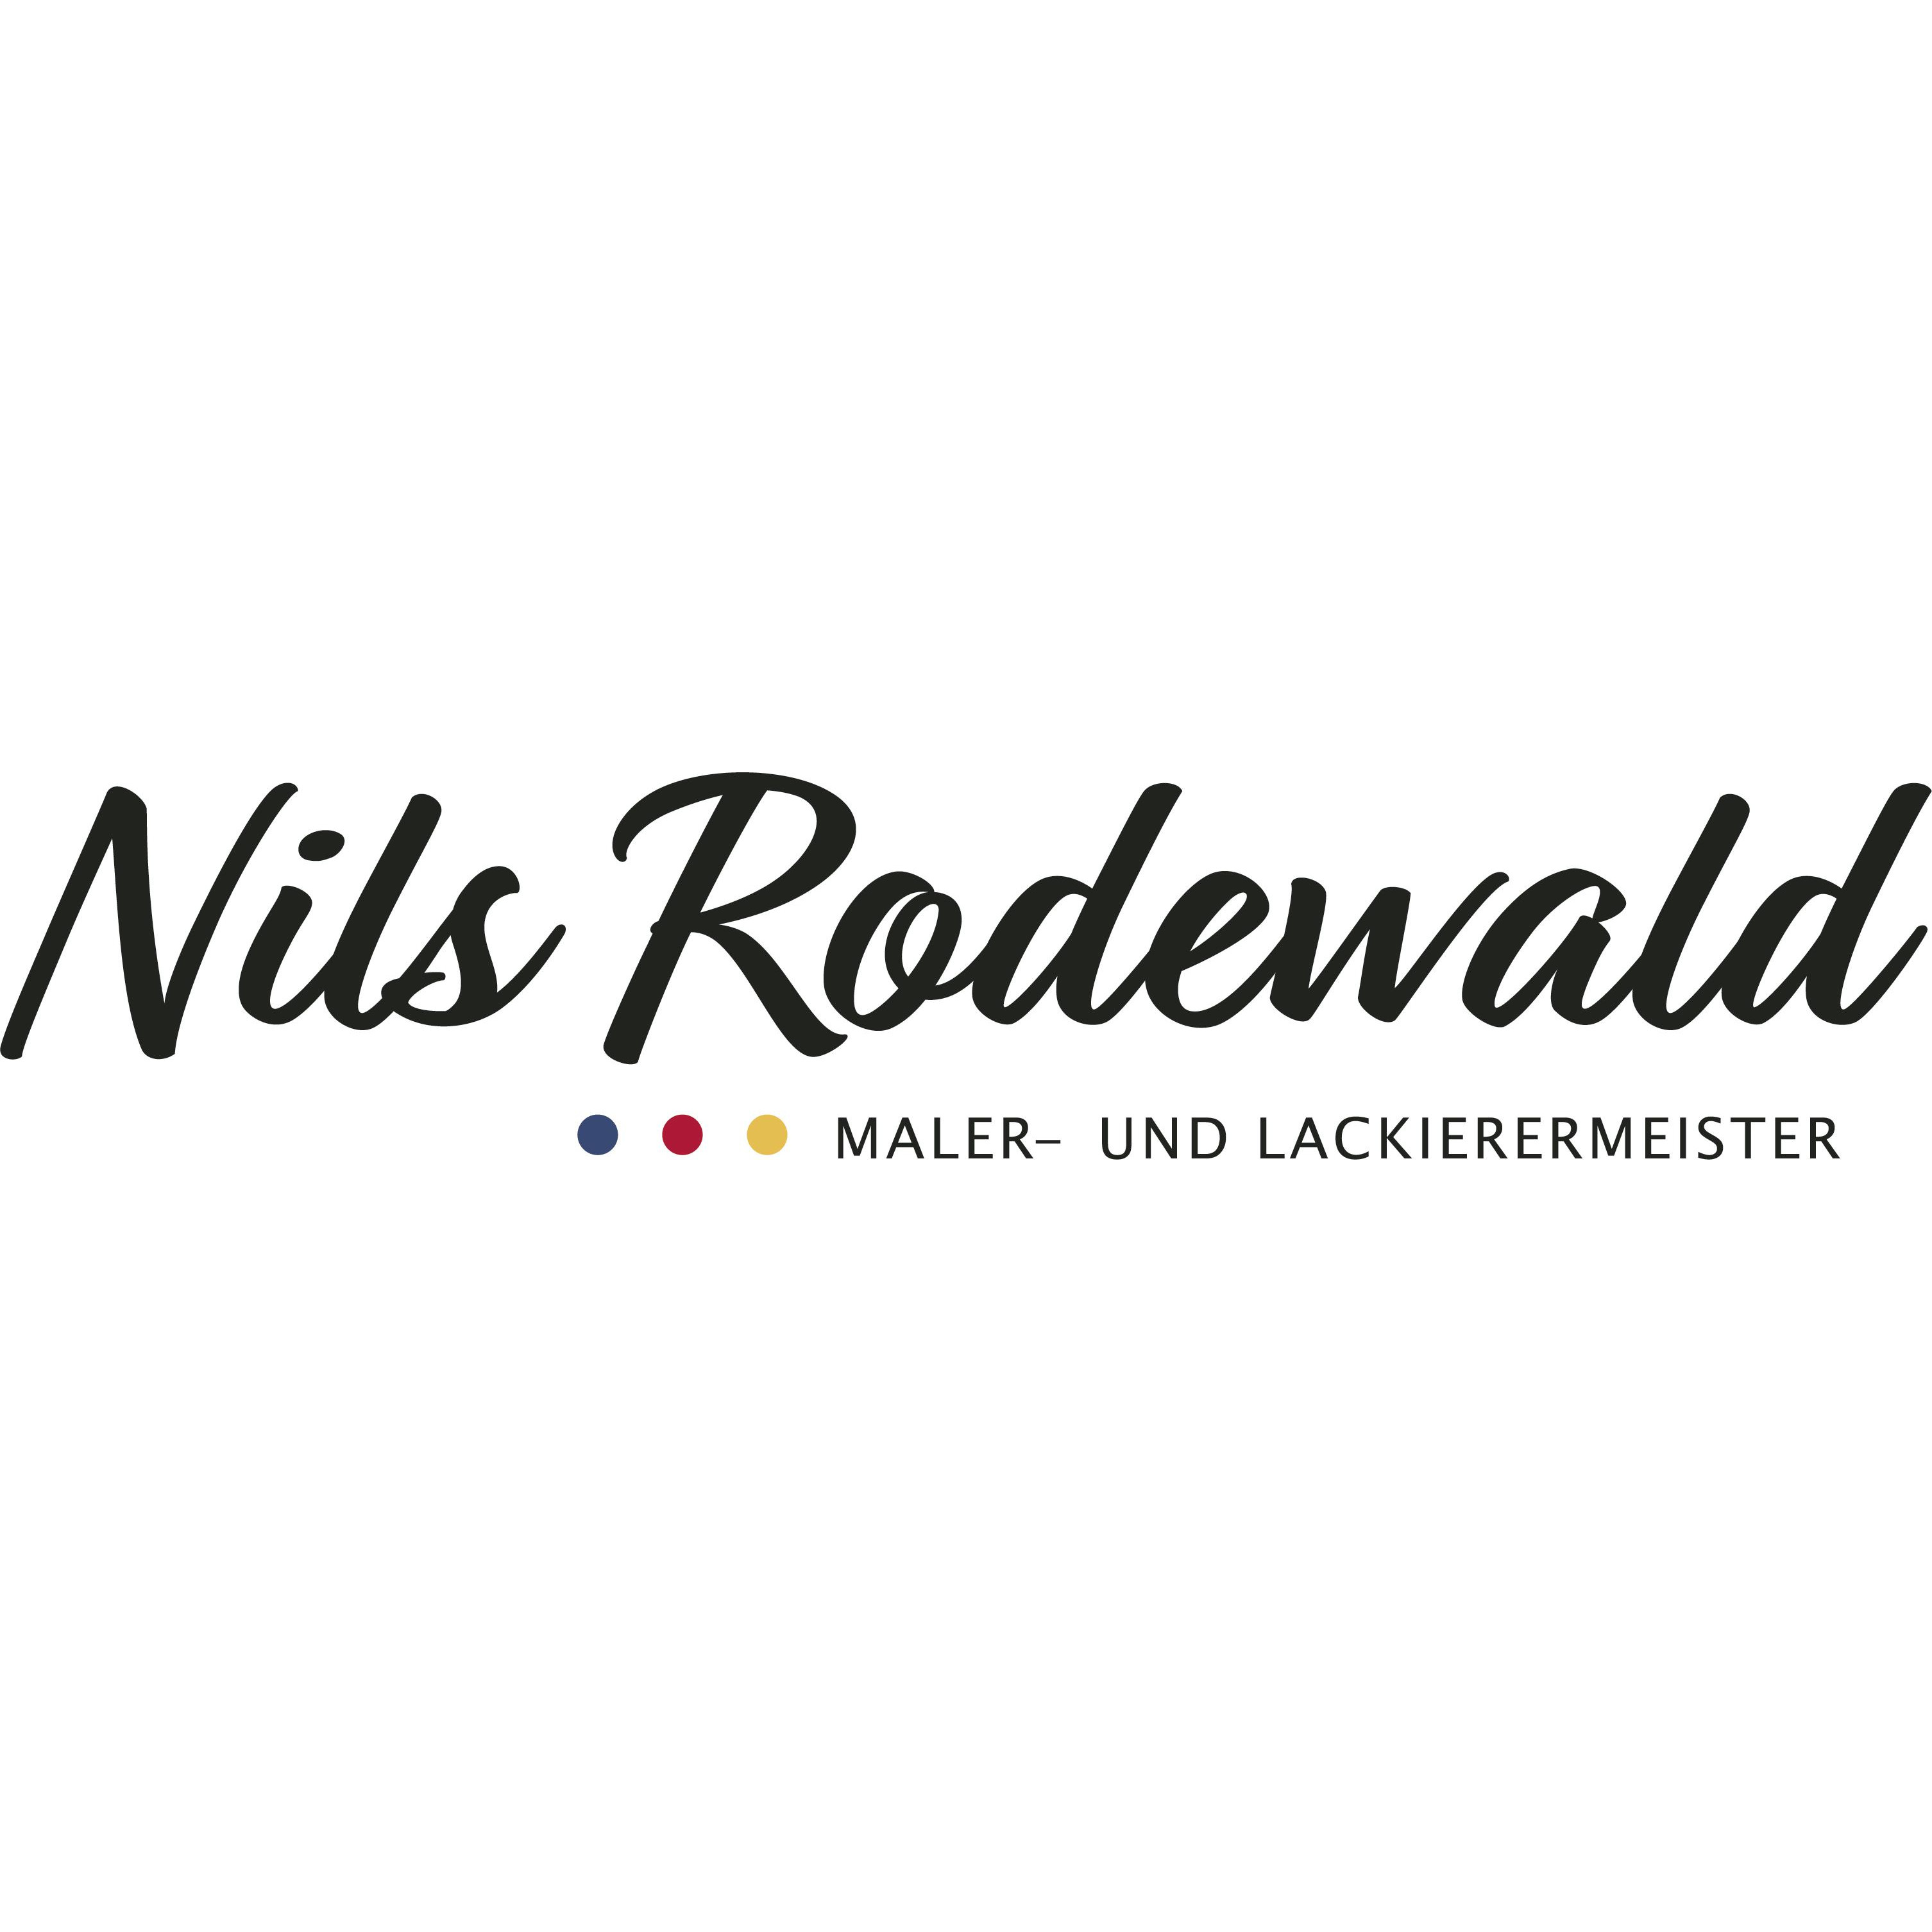 Maler und Lackierermeister Nils Rodewald Logo